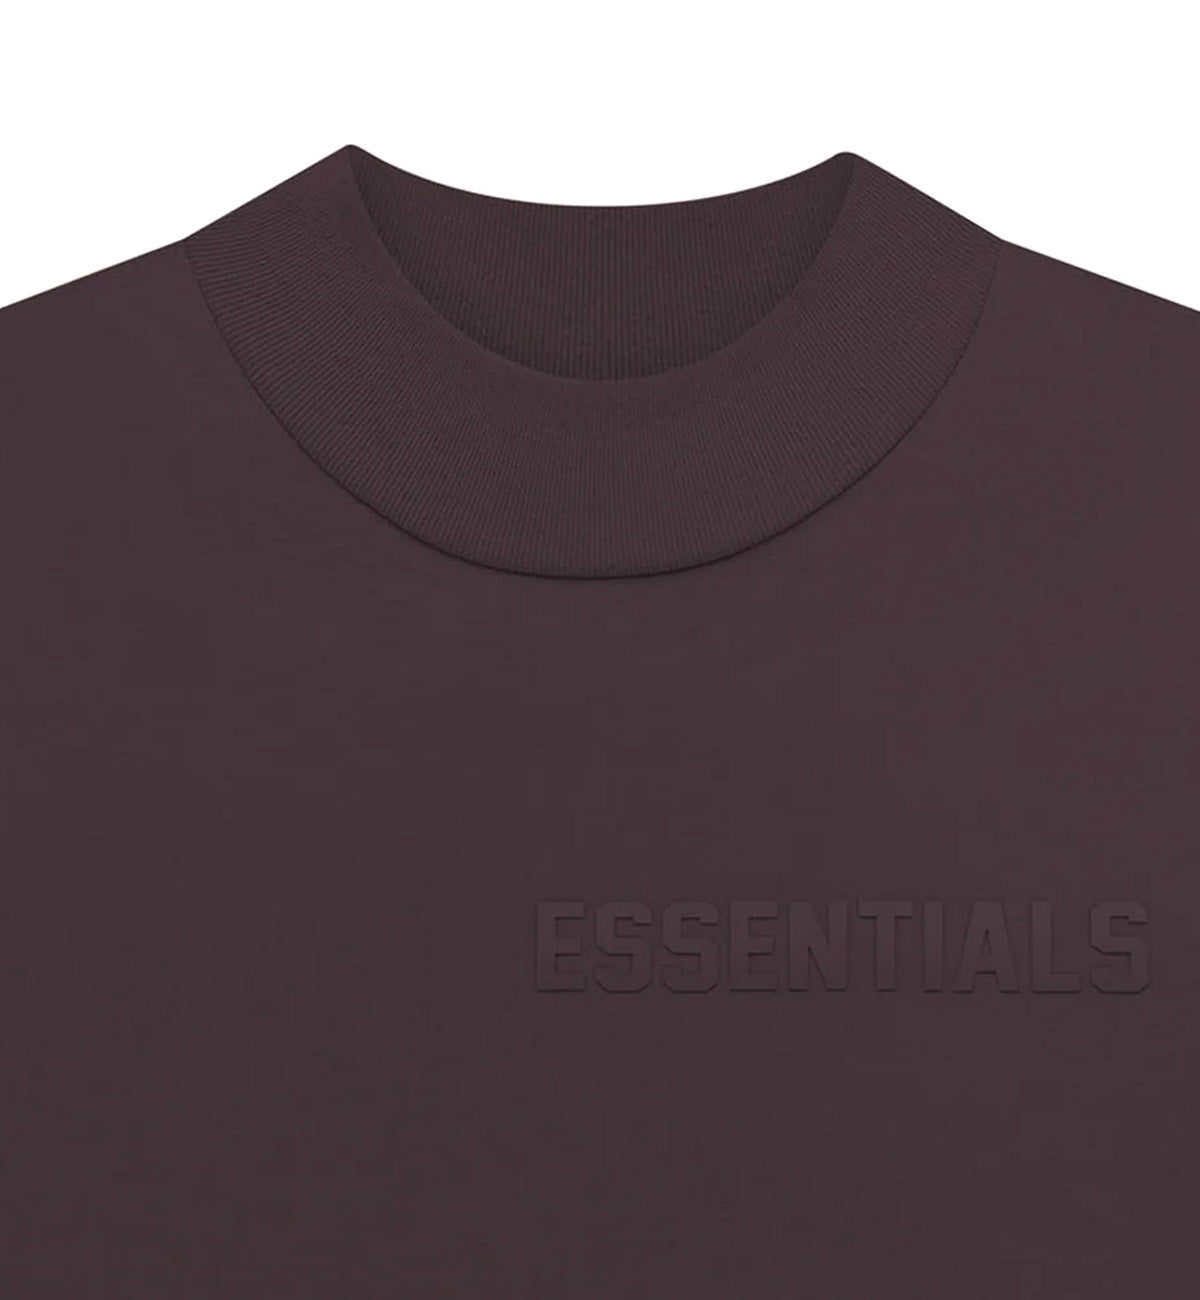 Fear of God Essential SS23 Long Sleeve T-Shirt (Plum)